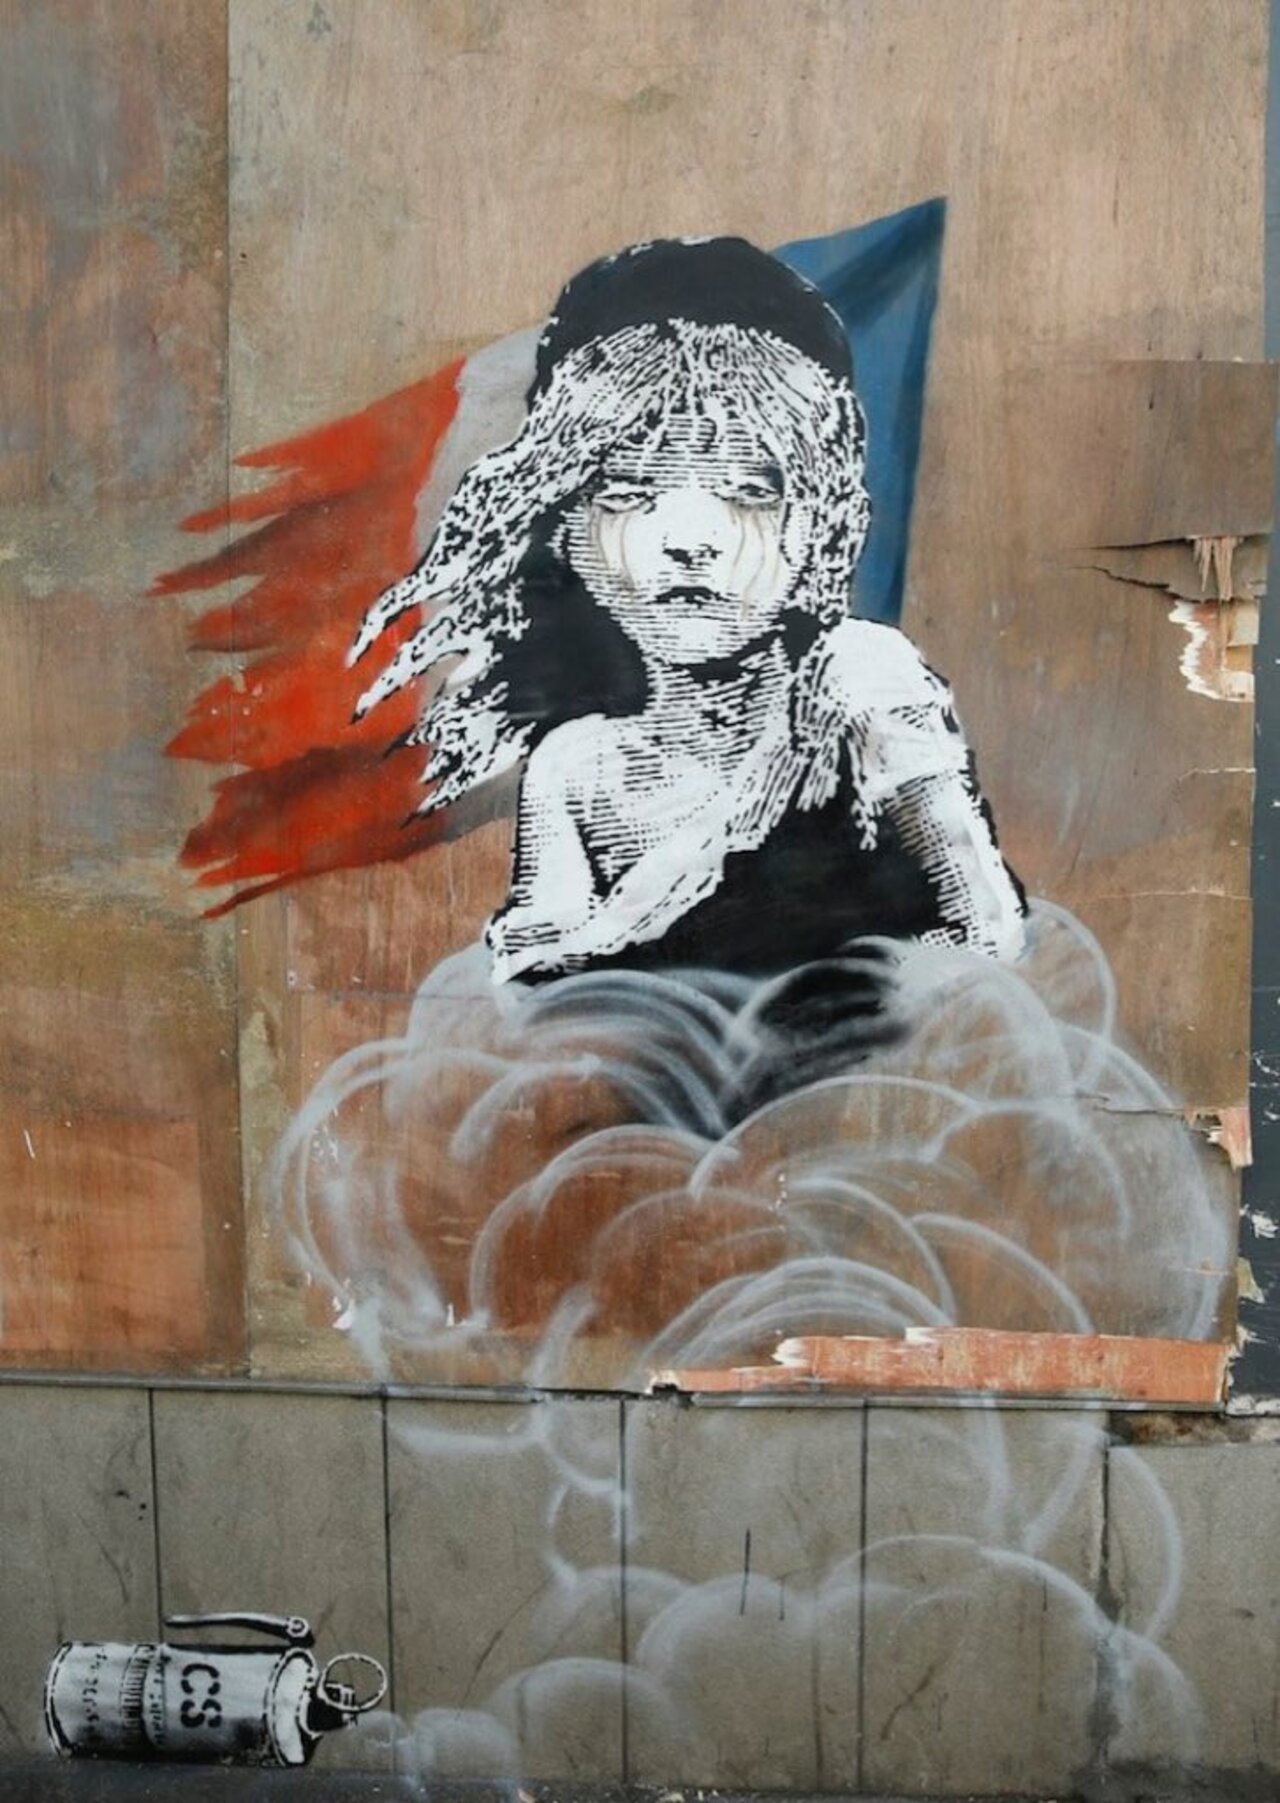 Banksy #FelizJueves #JuevesSanto #graffiti #popart #StreetStyle #StreetArt https://t.co/GnlCAhKaDo